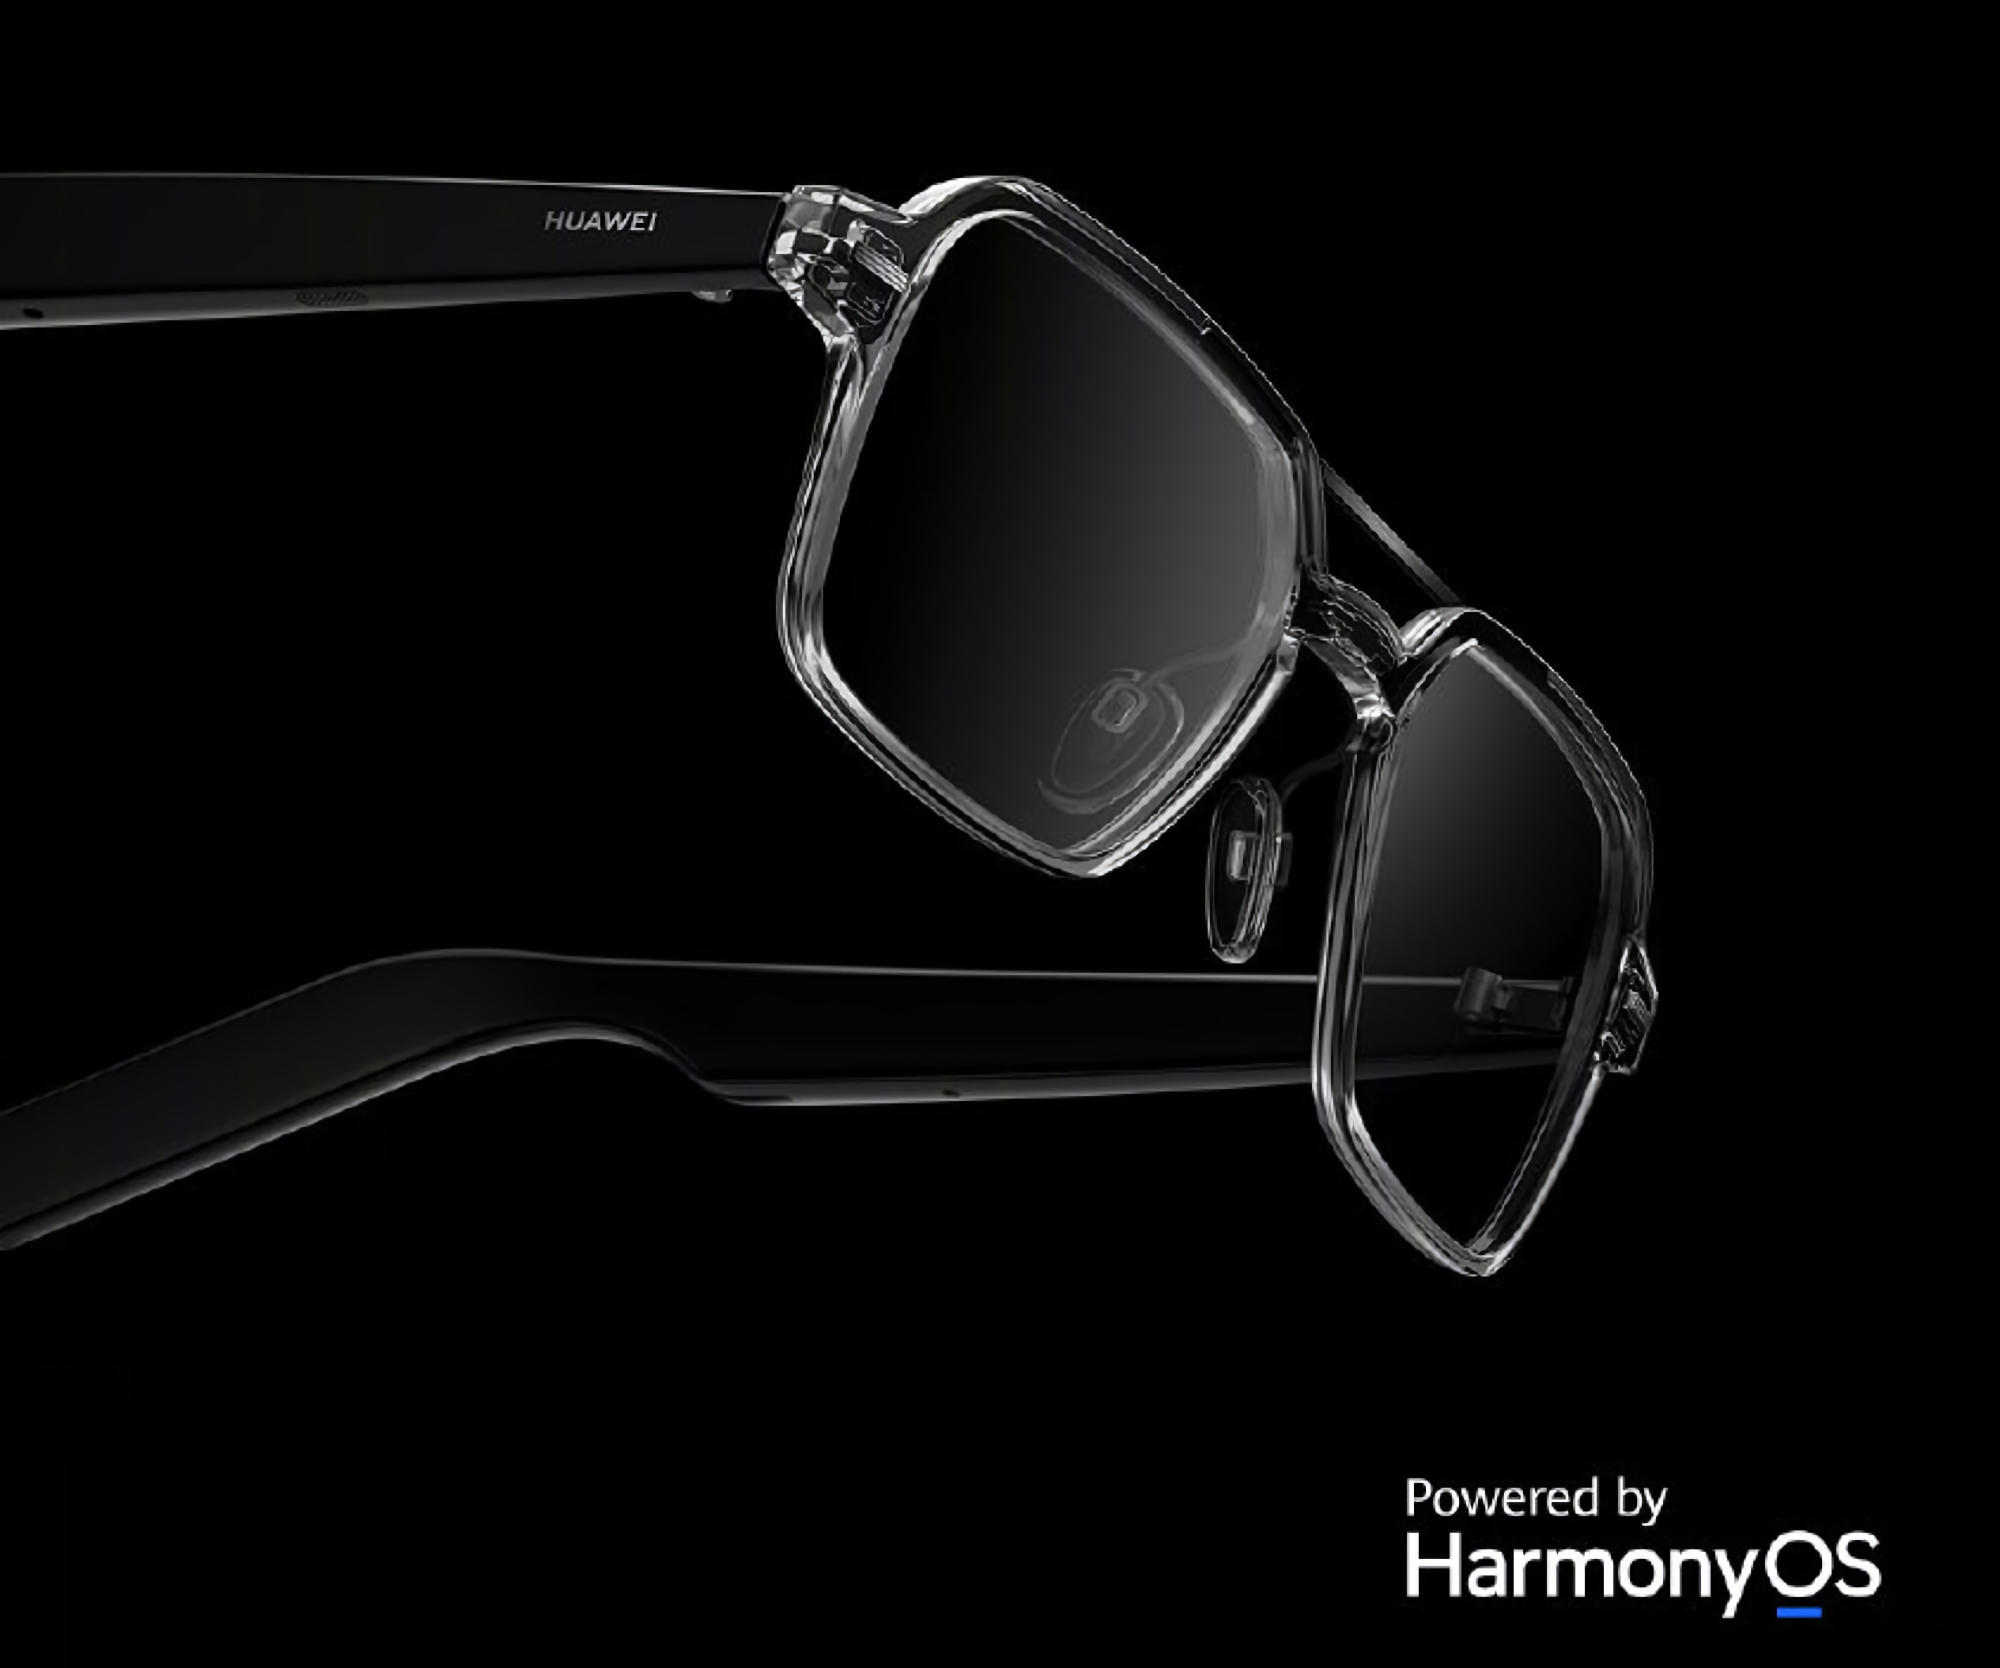 Huawei prezentuje nowe inteligentne okulary z HarmonyOS na pokładzie, ochroną IPX4, wbudowanymi głośnikami i autonomią do 16 godzin